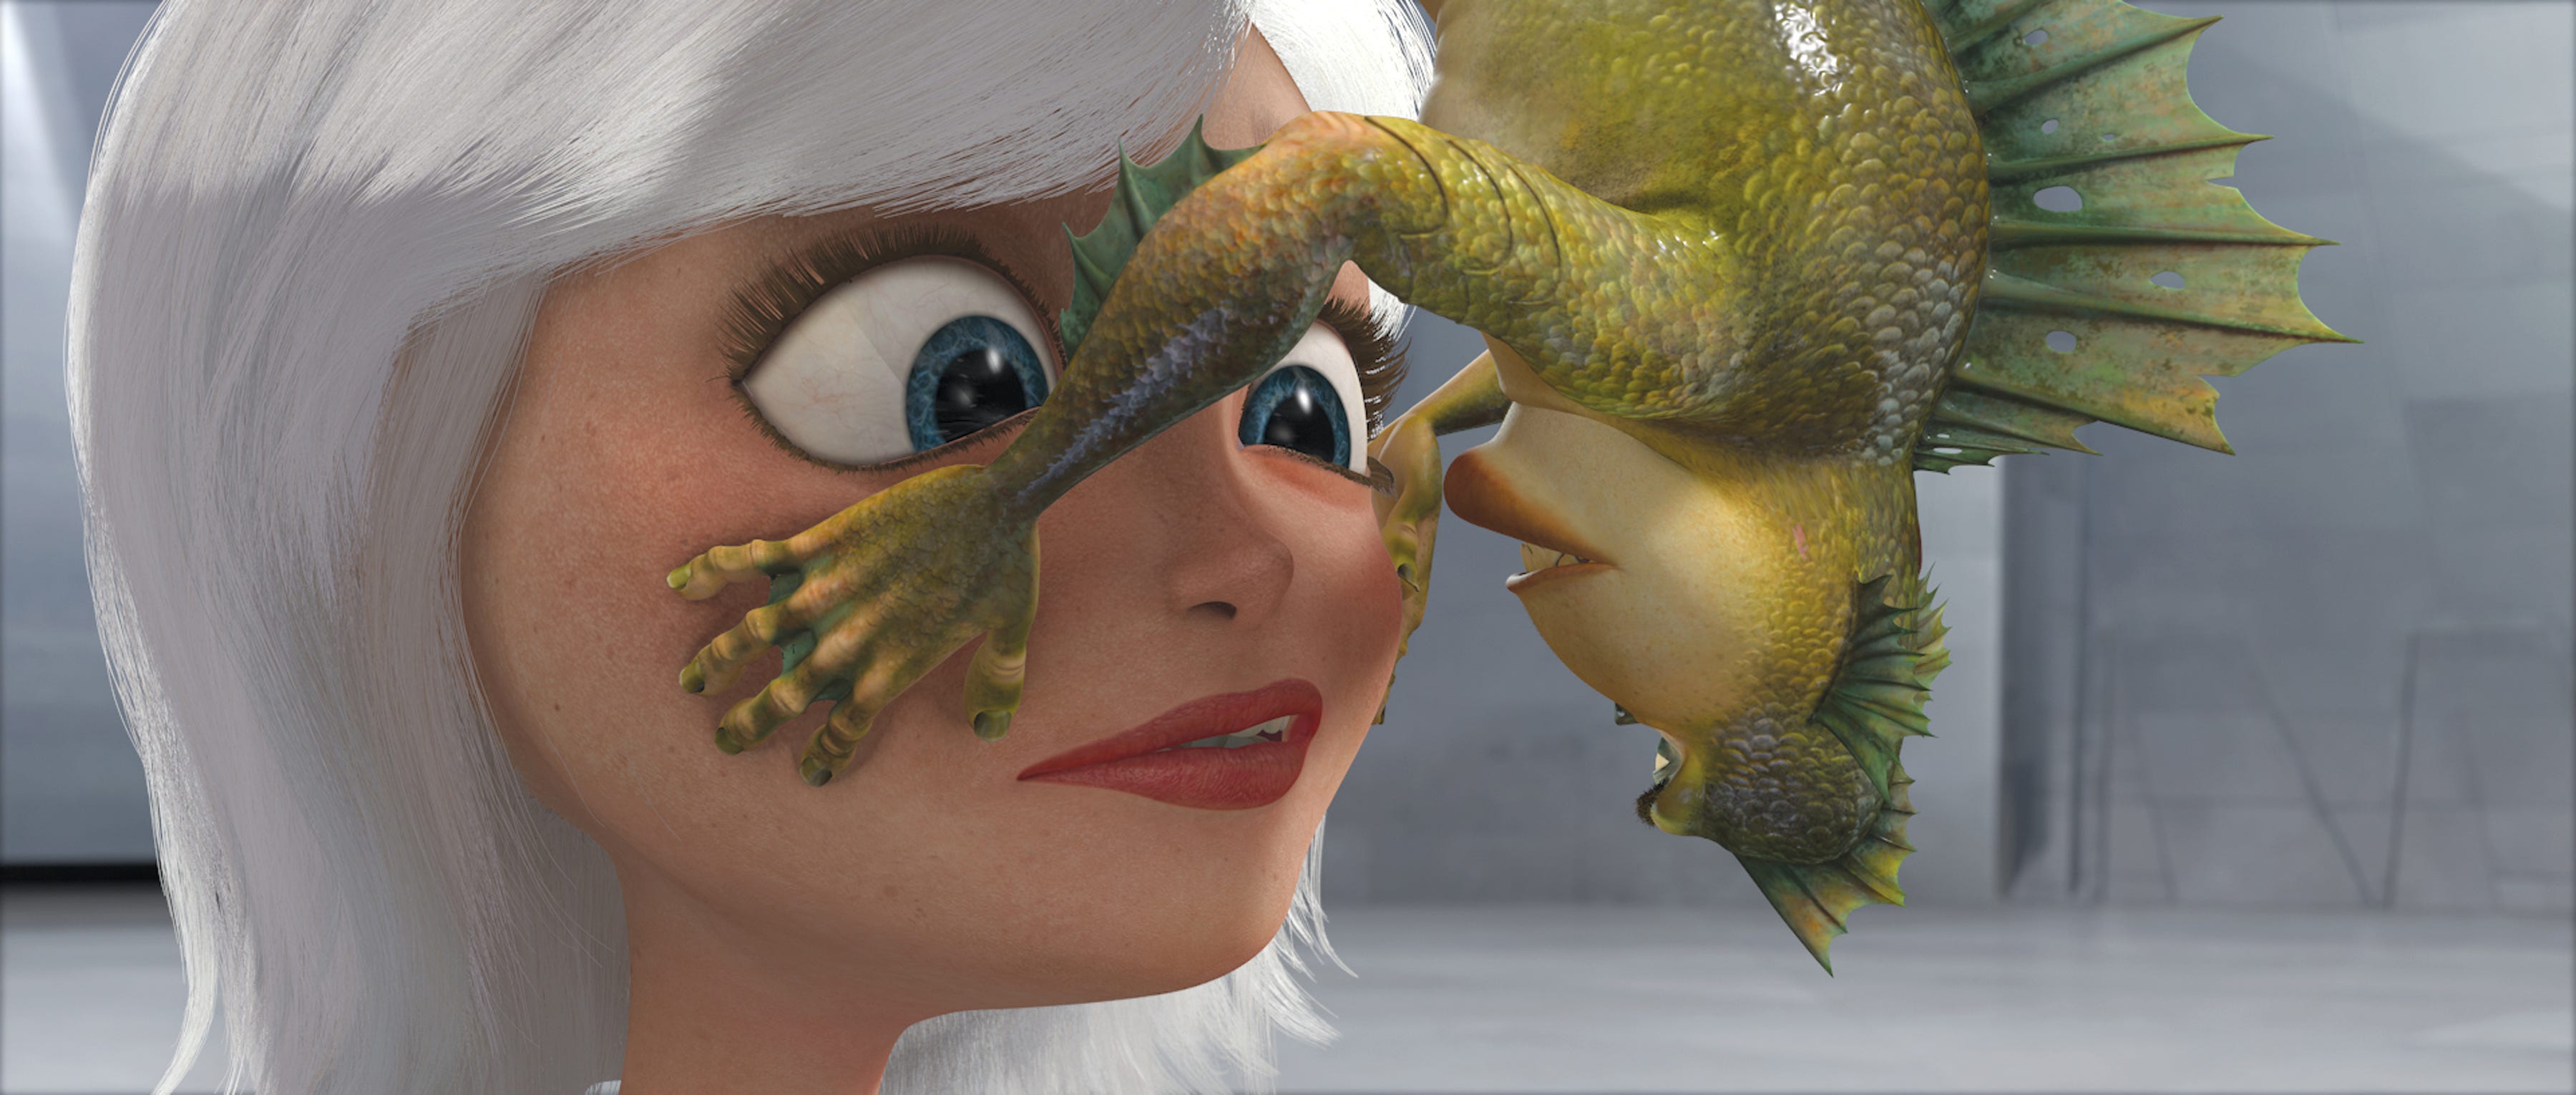 monsters vs aliens ginormica kiss derek